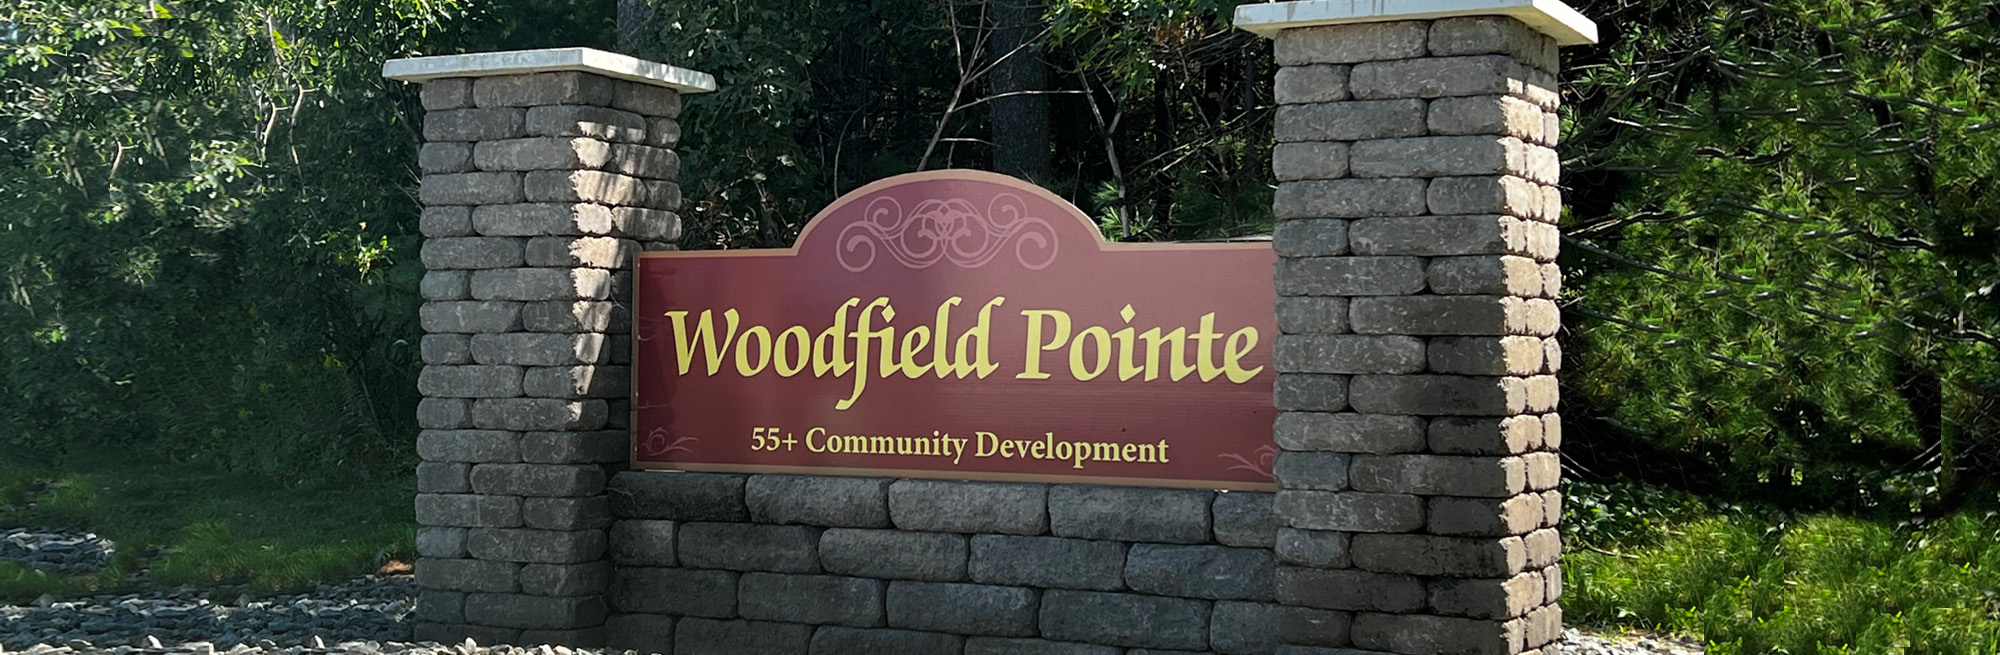 woodfield pointe